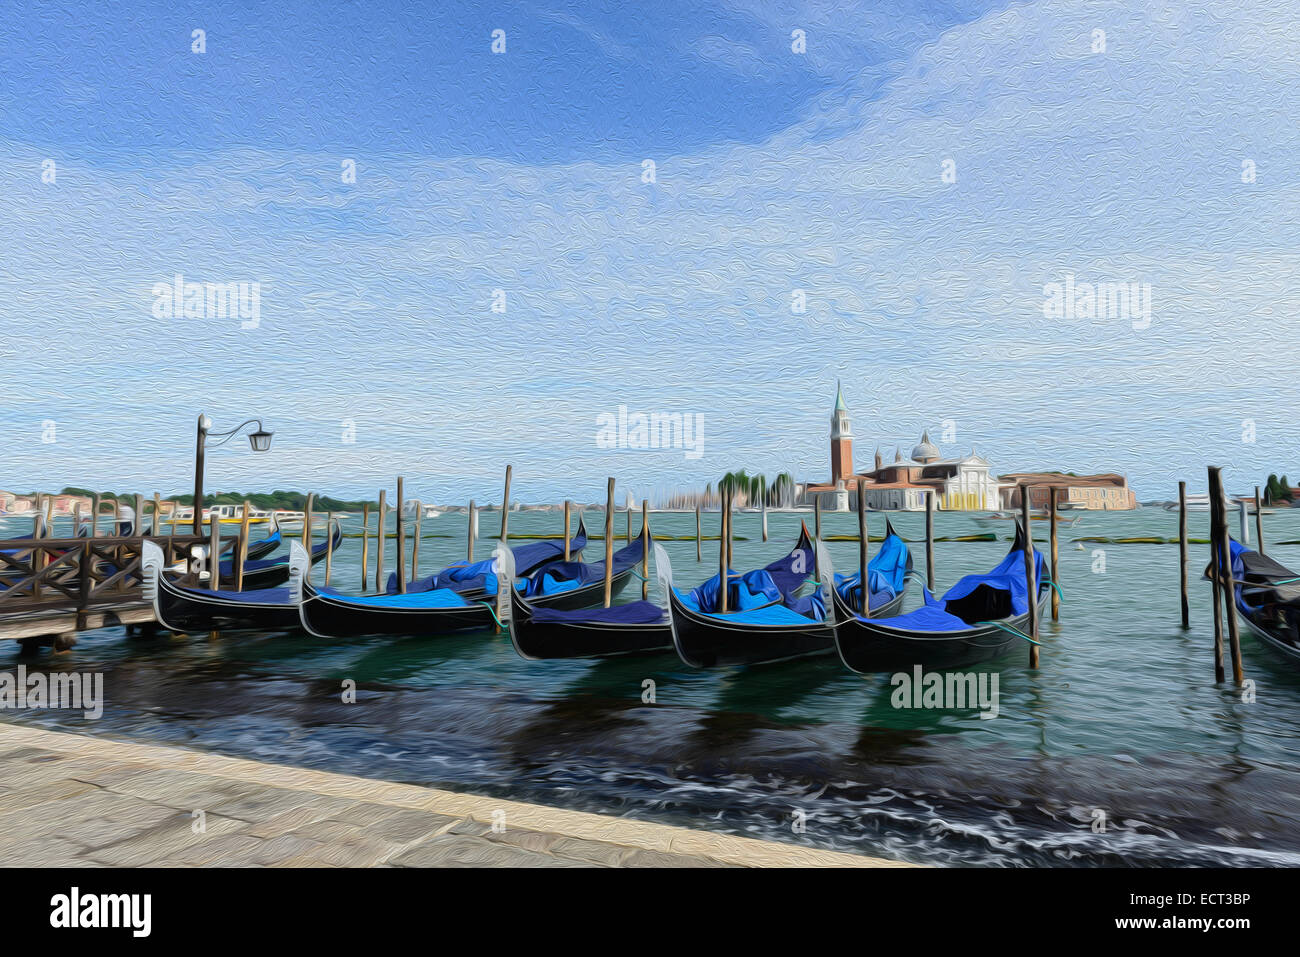 Les gondoles de Venise, Italie Banque D'Images